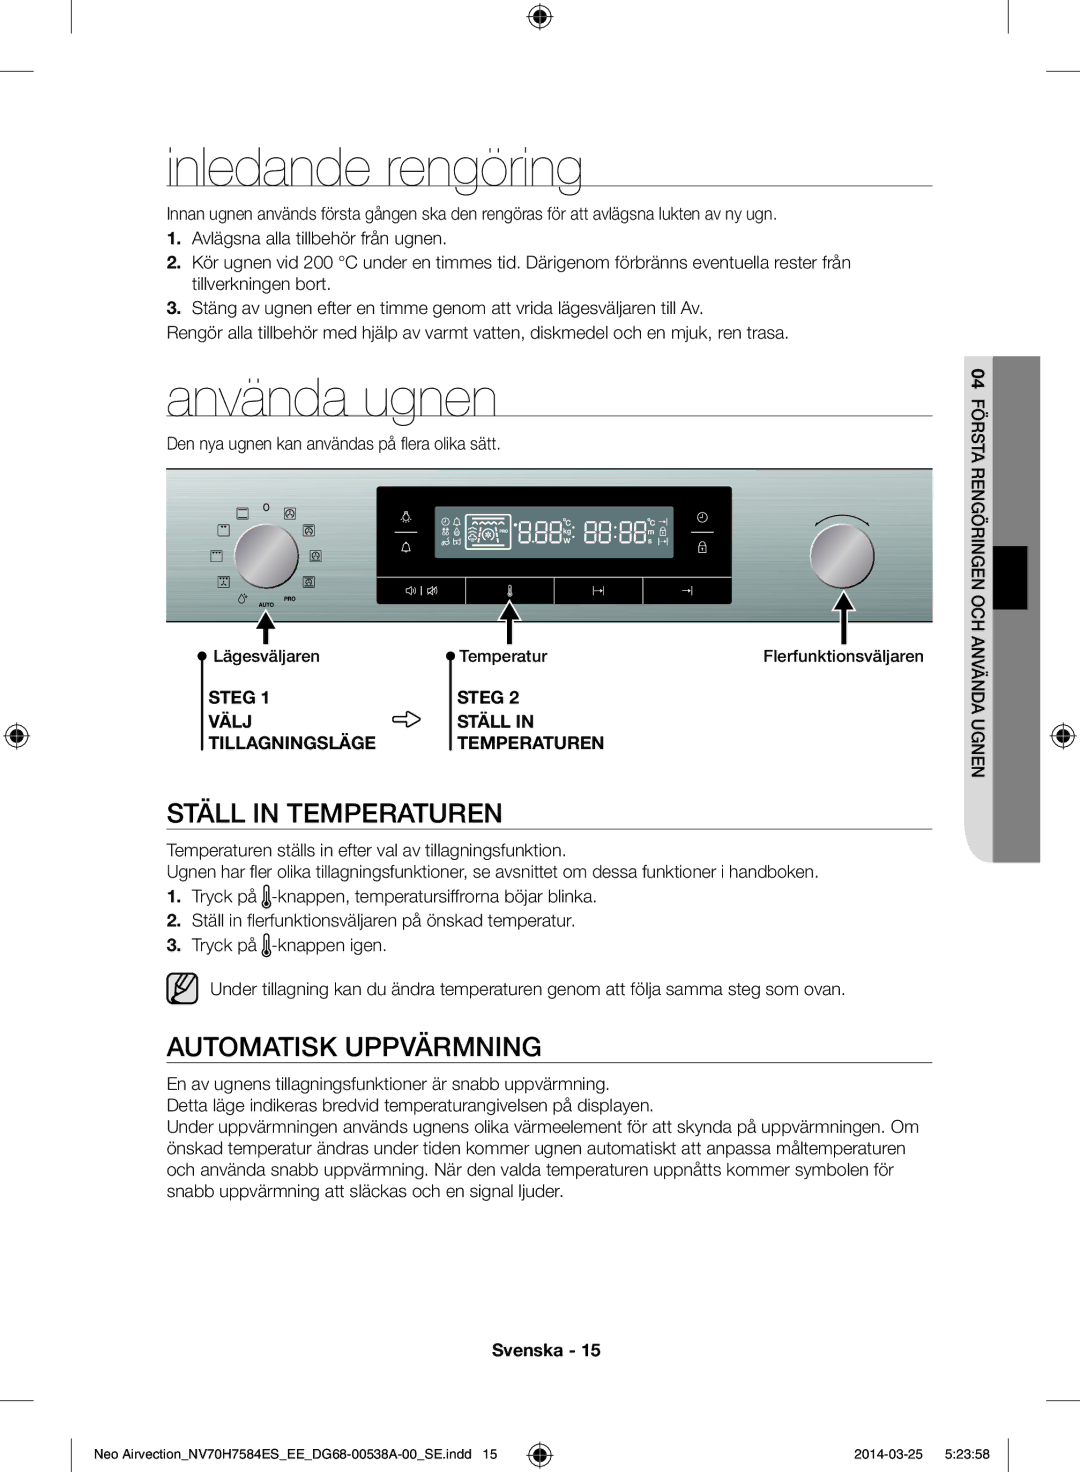 Samsung NV70H7584ES/EE manual Inledande rengöring, Använda ugnen, Ställ in temperaturen, Automatisk uppvärmning 